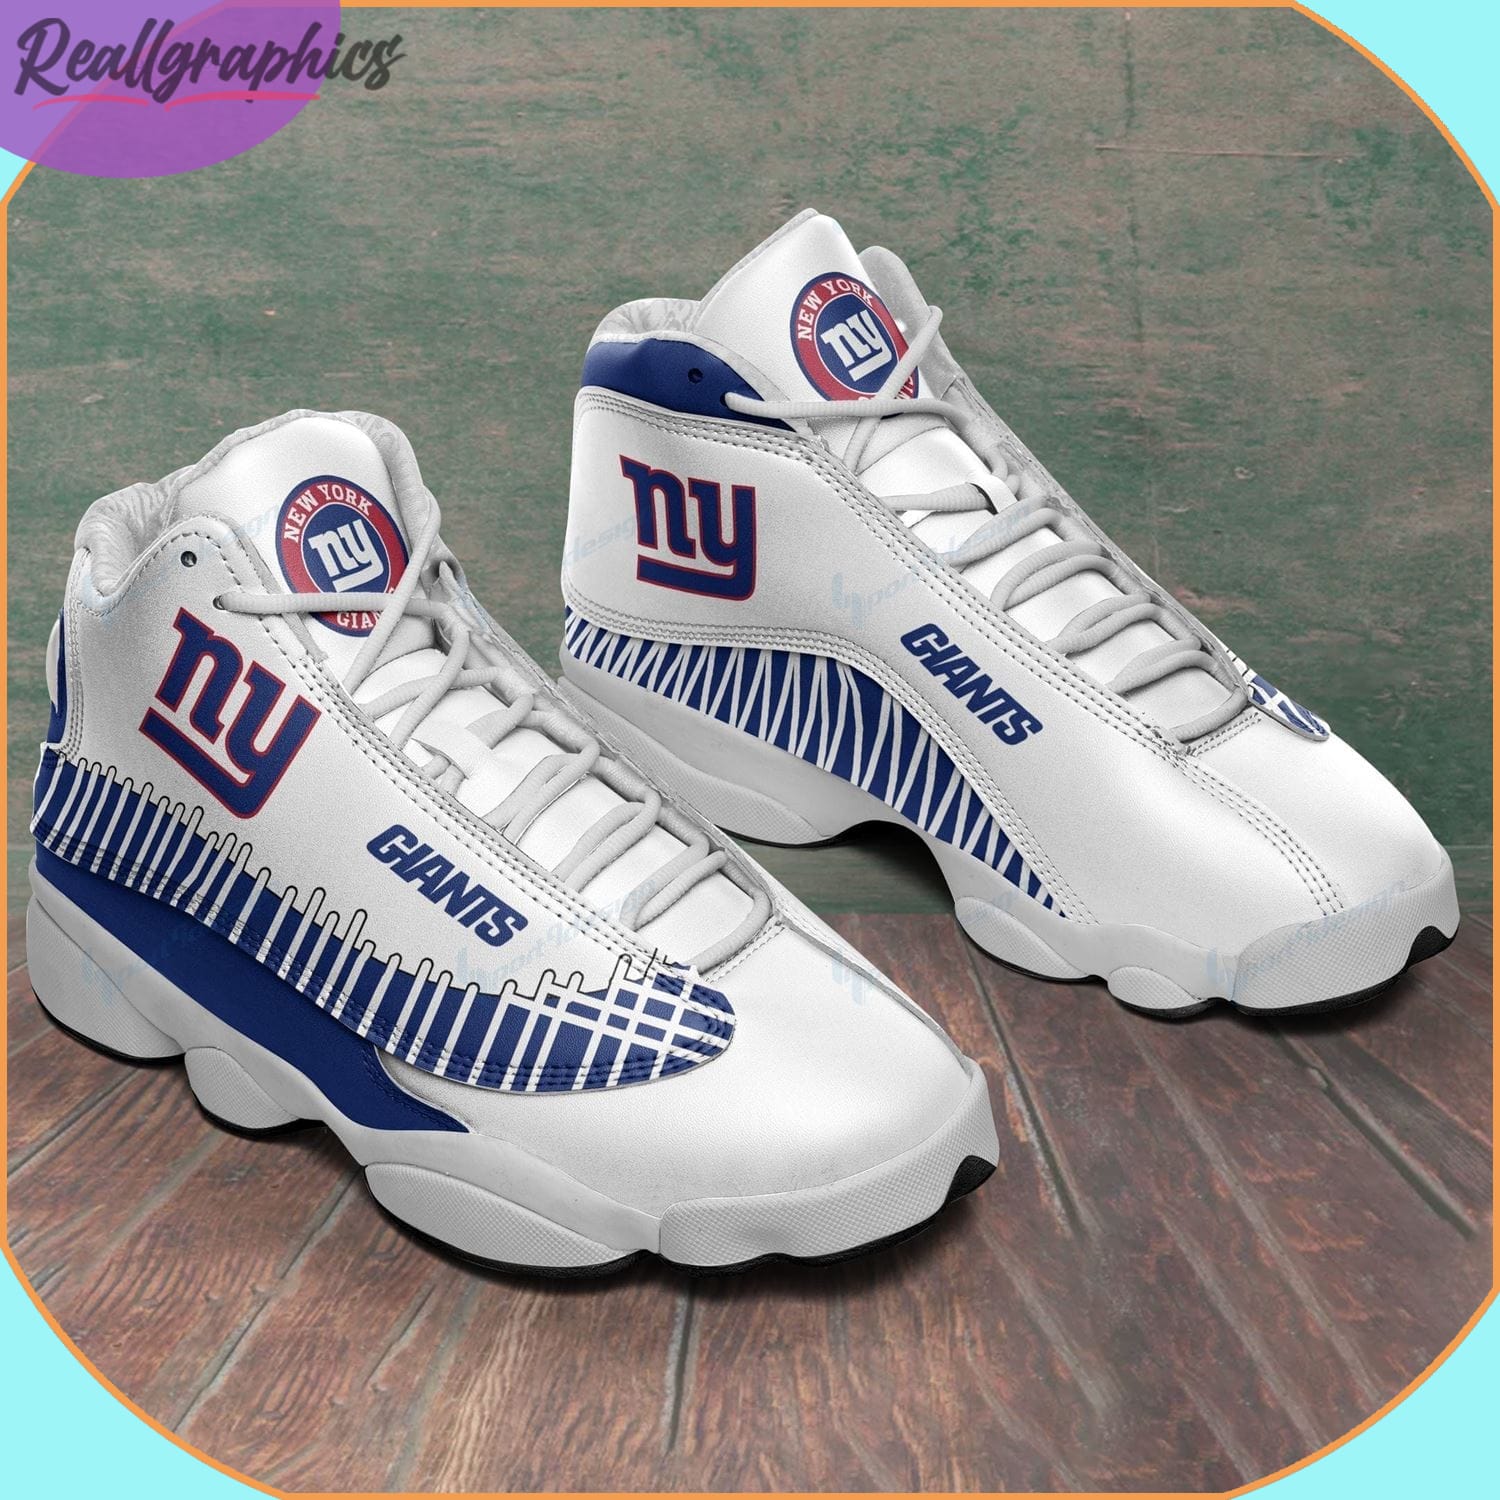 New York Giants Air Jordan 13 Sneakers